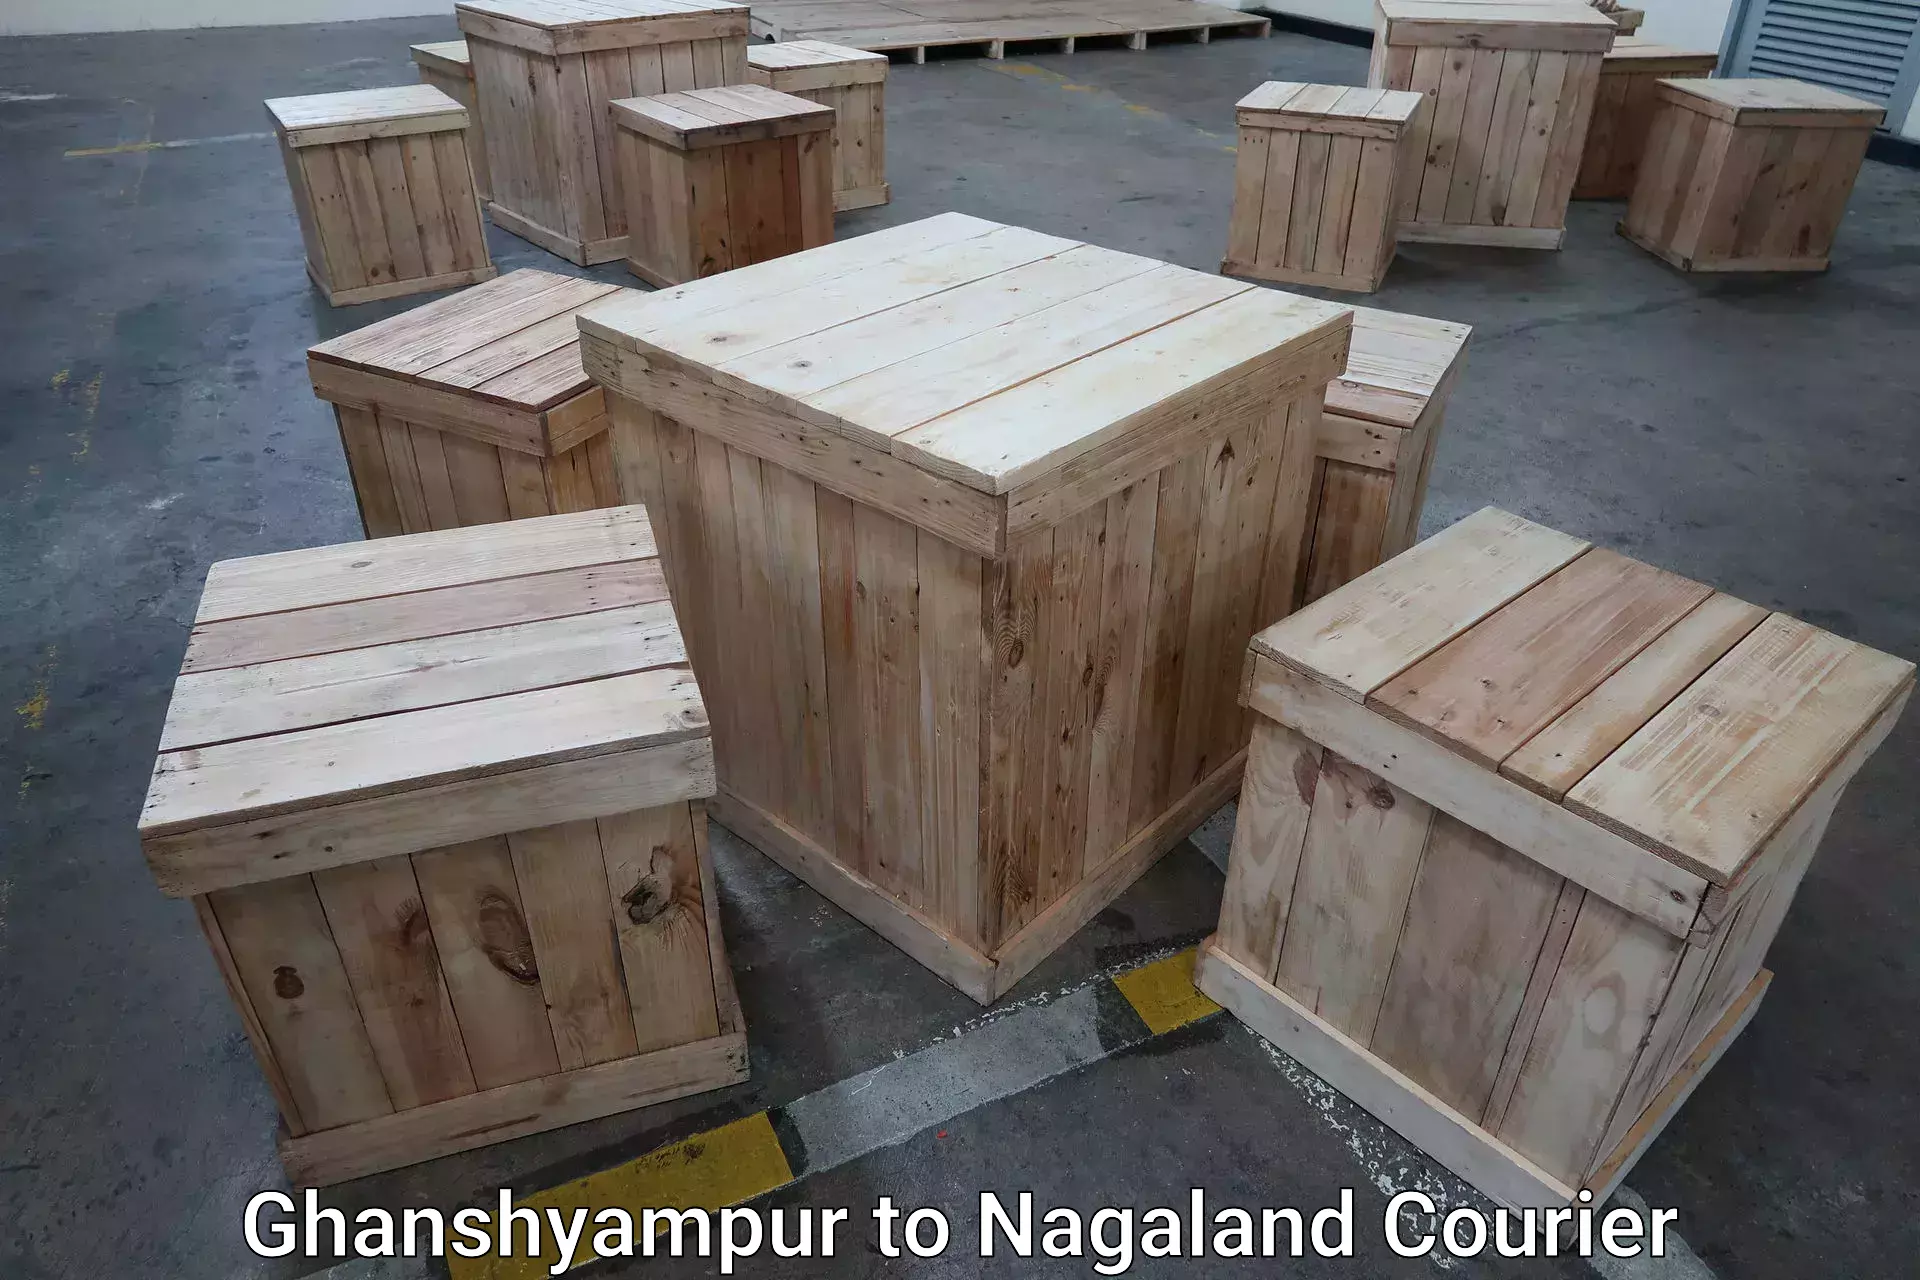 Door-to-door baggage service Ghanshyampur to Nagaland